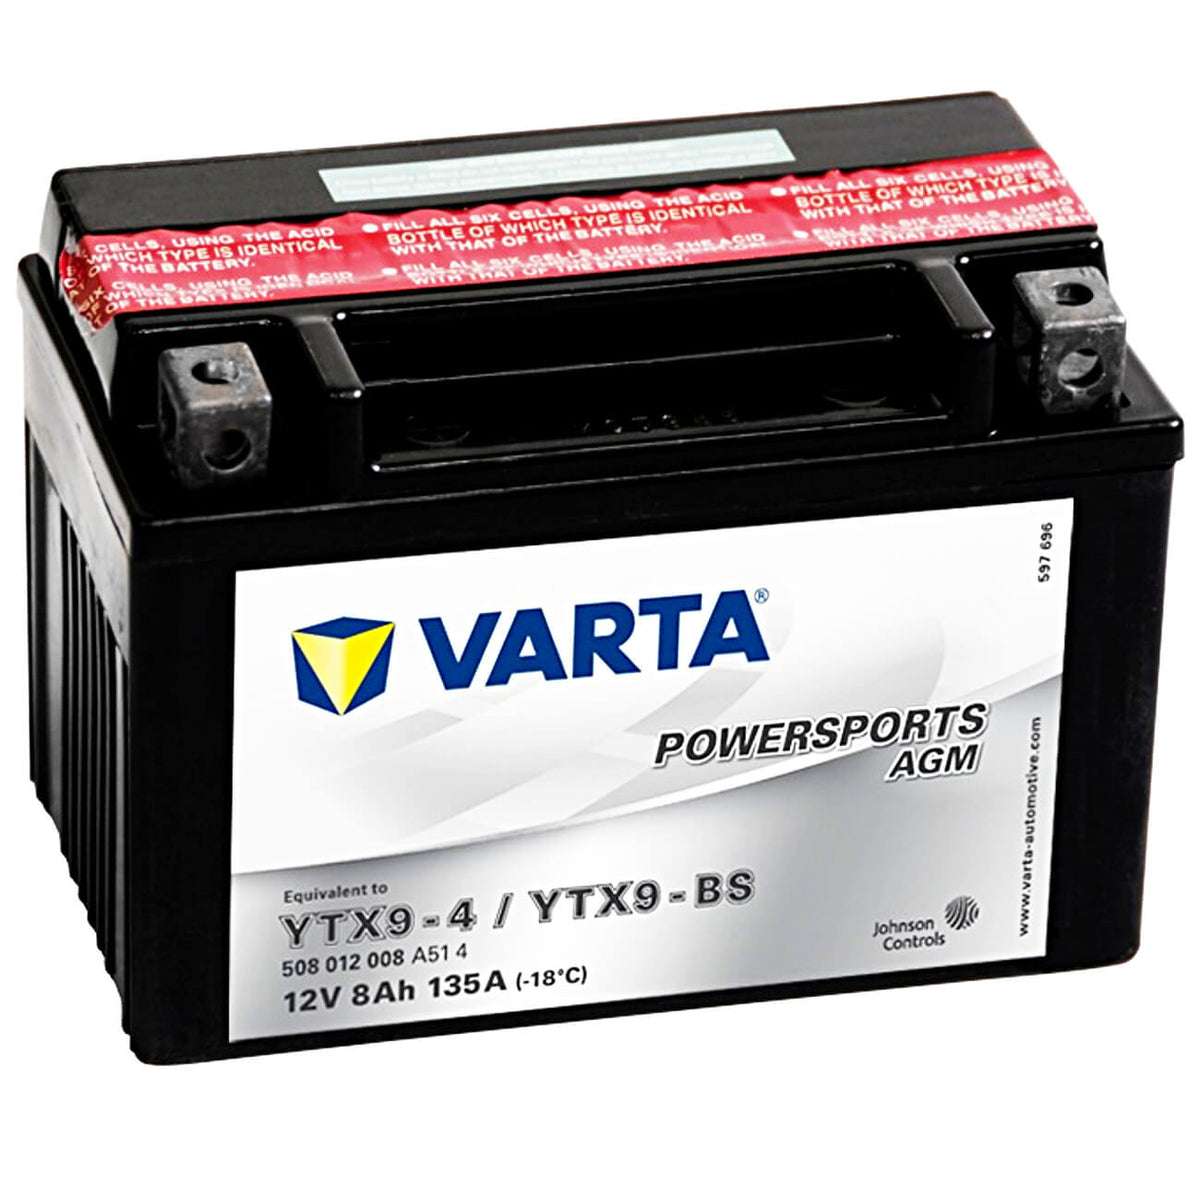 Varta YTX9-BS Powersports AGM 12V 8Ah 50812 YTX9-4